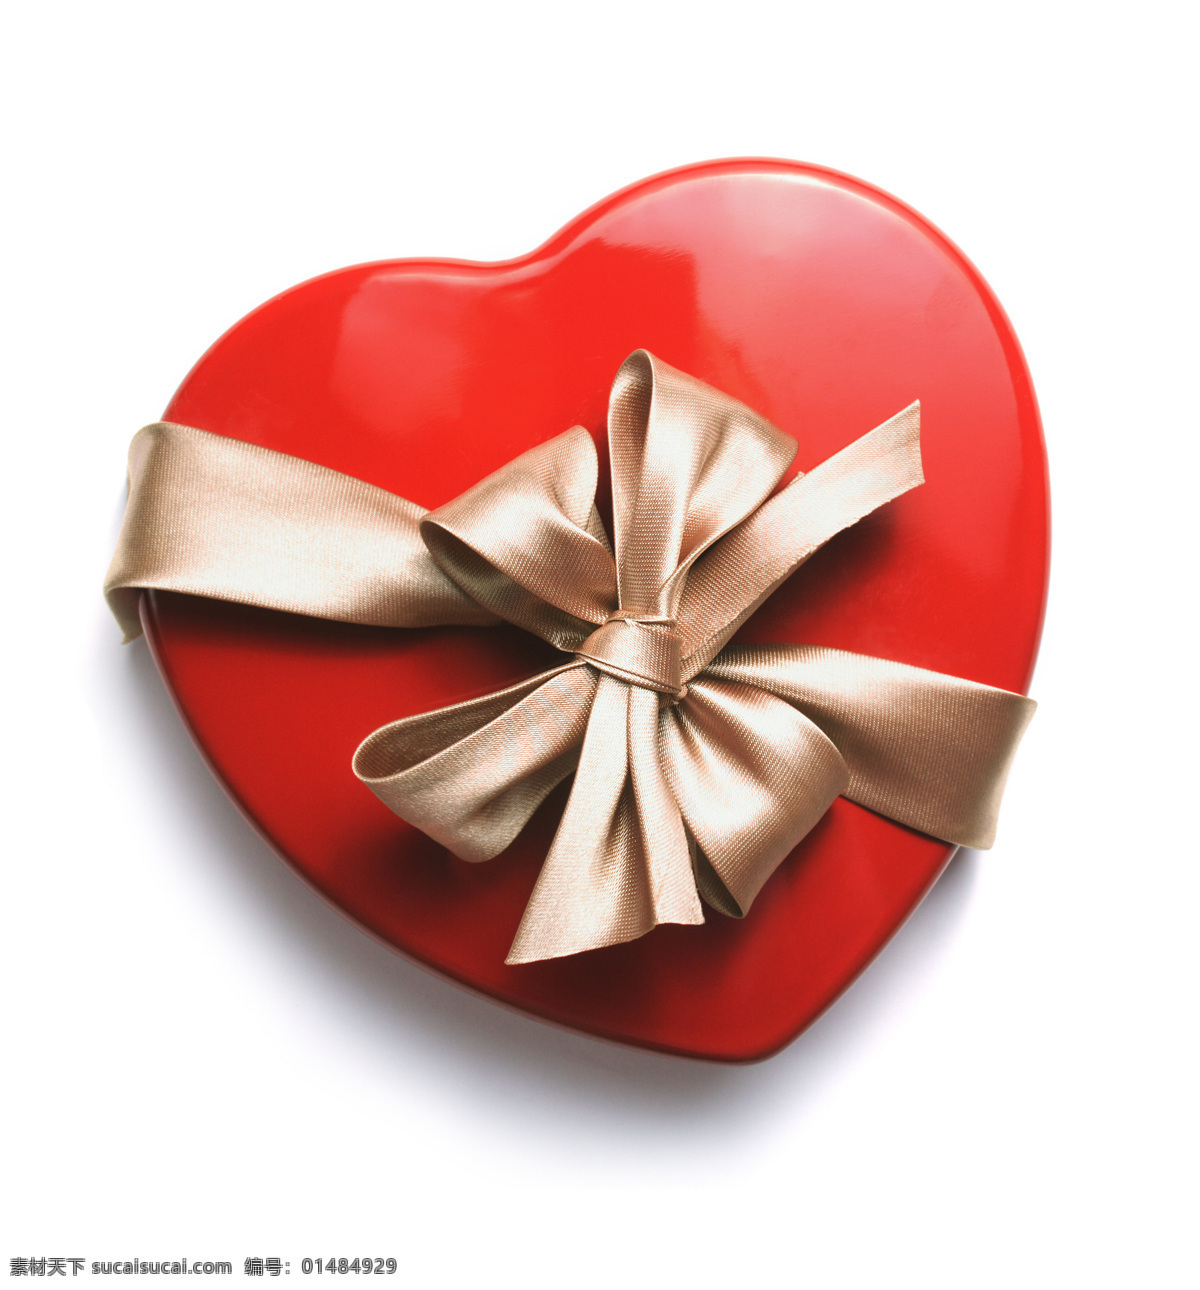 心形 礼盒 物品 樱桃形状 爱情 红心 情人节素材 3d作品 3d设计 其他类别 生活百科